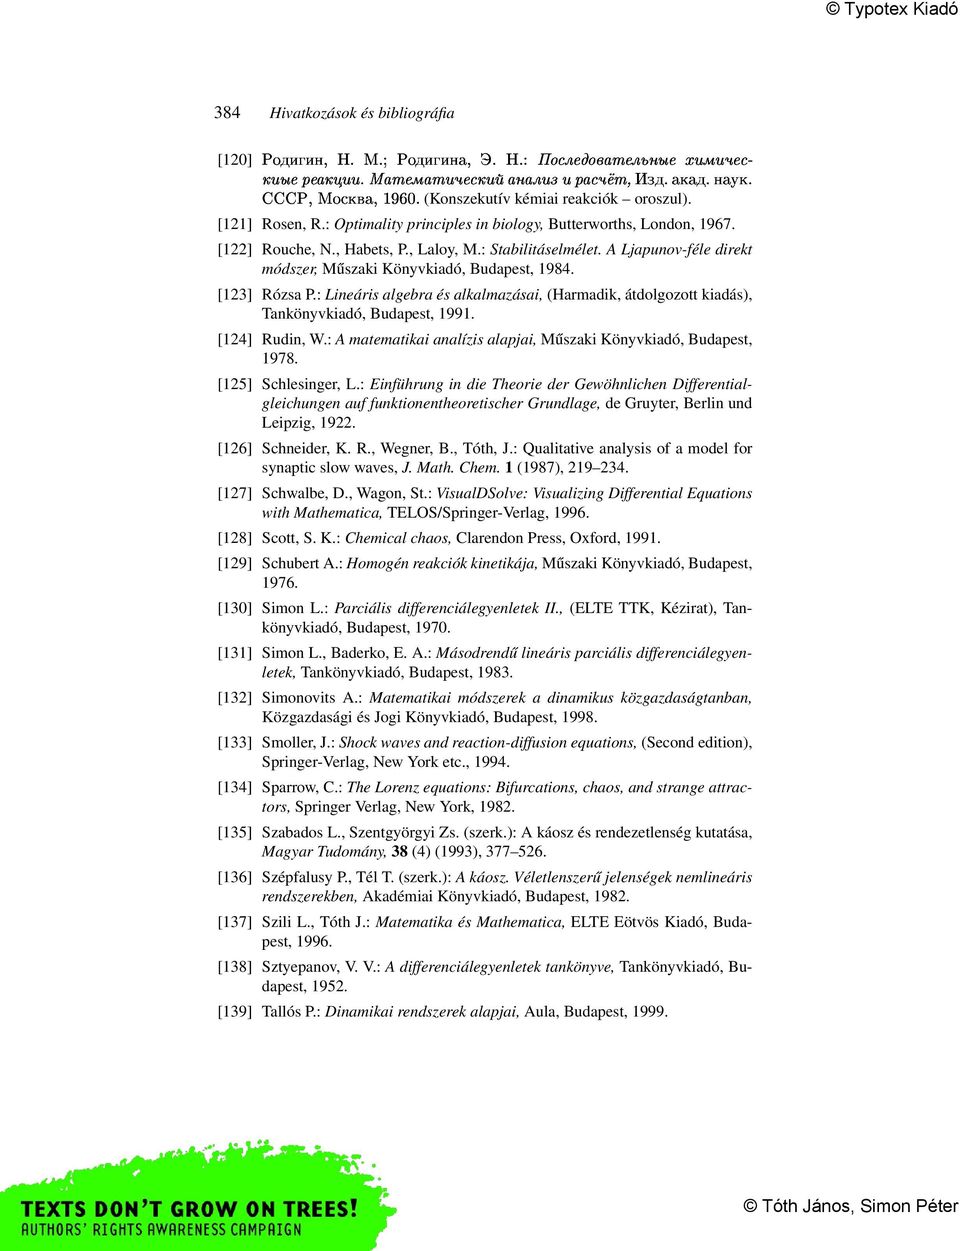 [123] Rózsa P.: Lineáris algebra és alkalmazásai, (Harmadik, átdolgozott kiadás), Tankönyvkiadó, Budapest, 1991. [124] Rudin, W.: A matematikai analízis alapjai, Műszaki Könyvkiadó, Budapest, 1978.